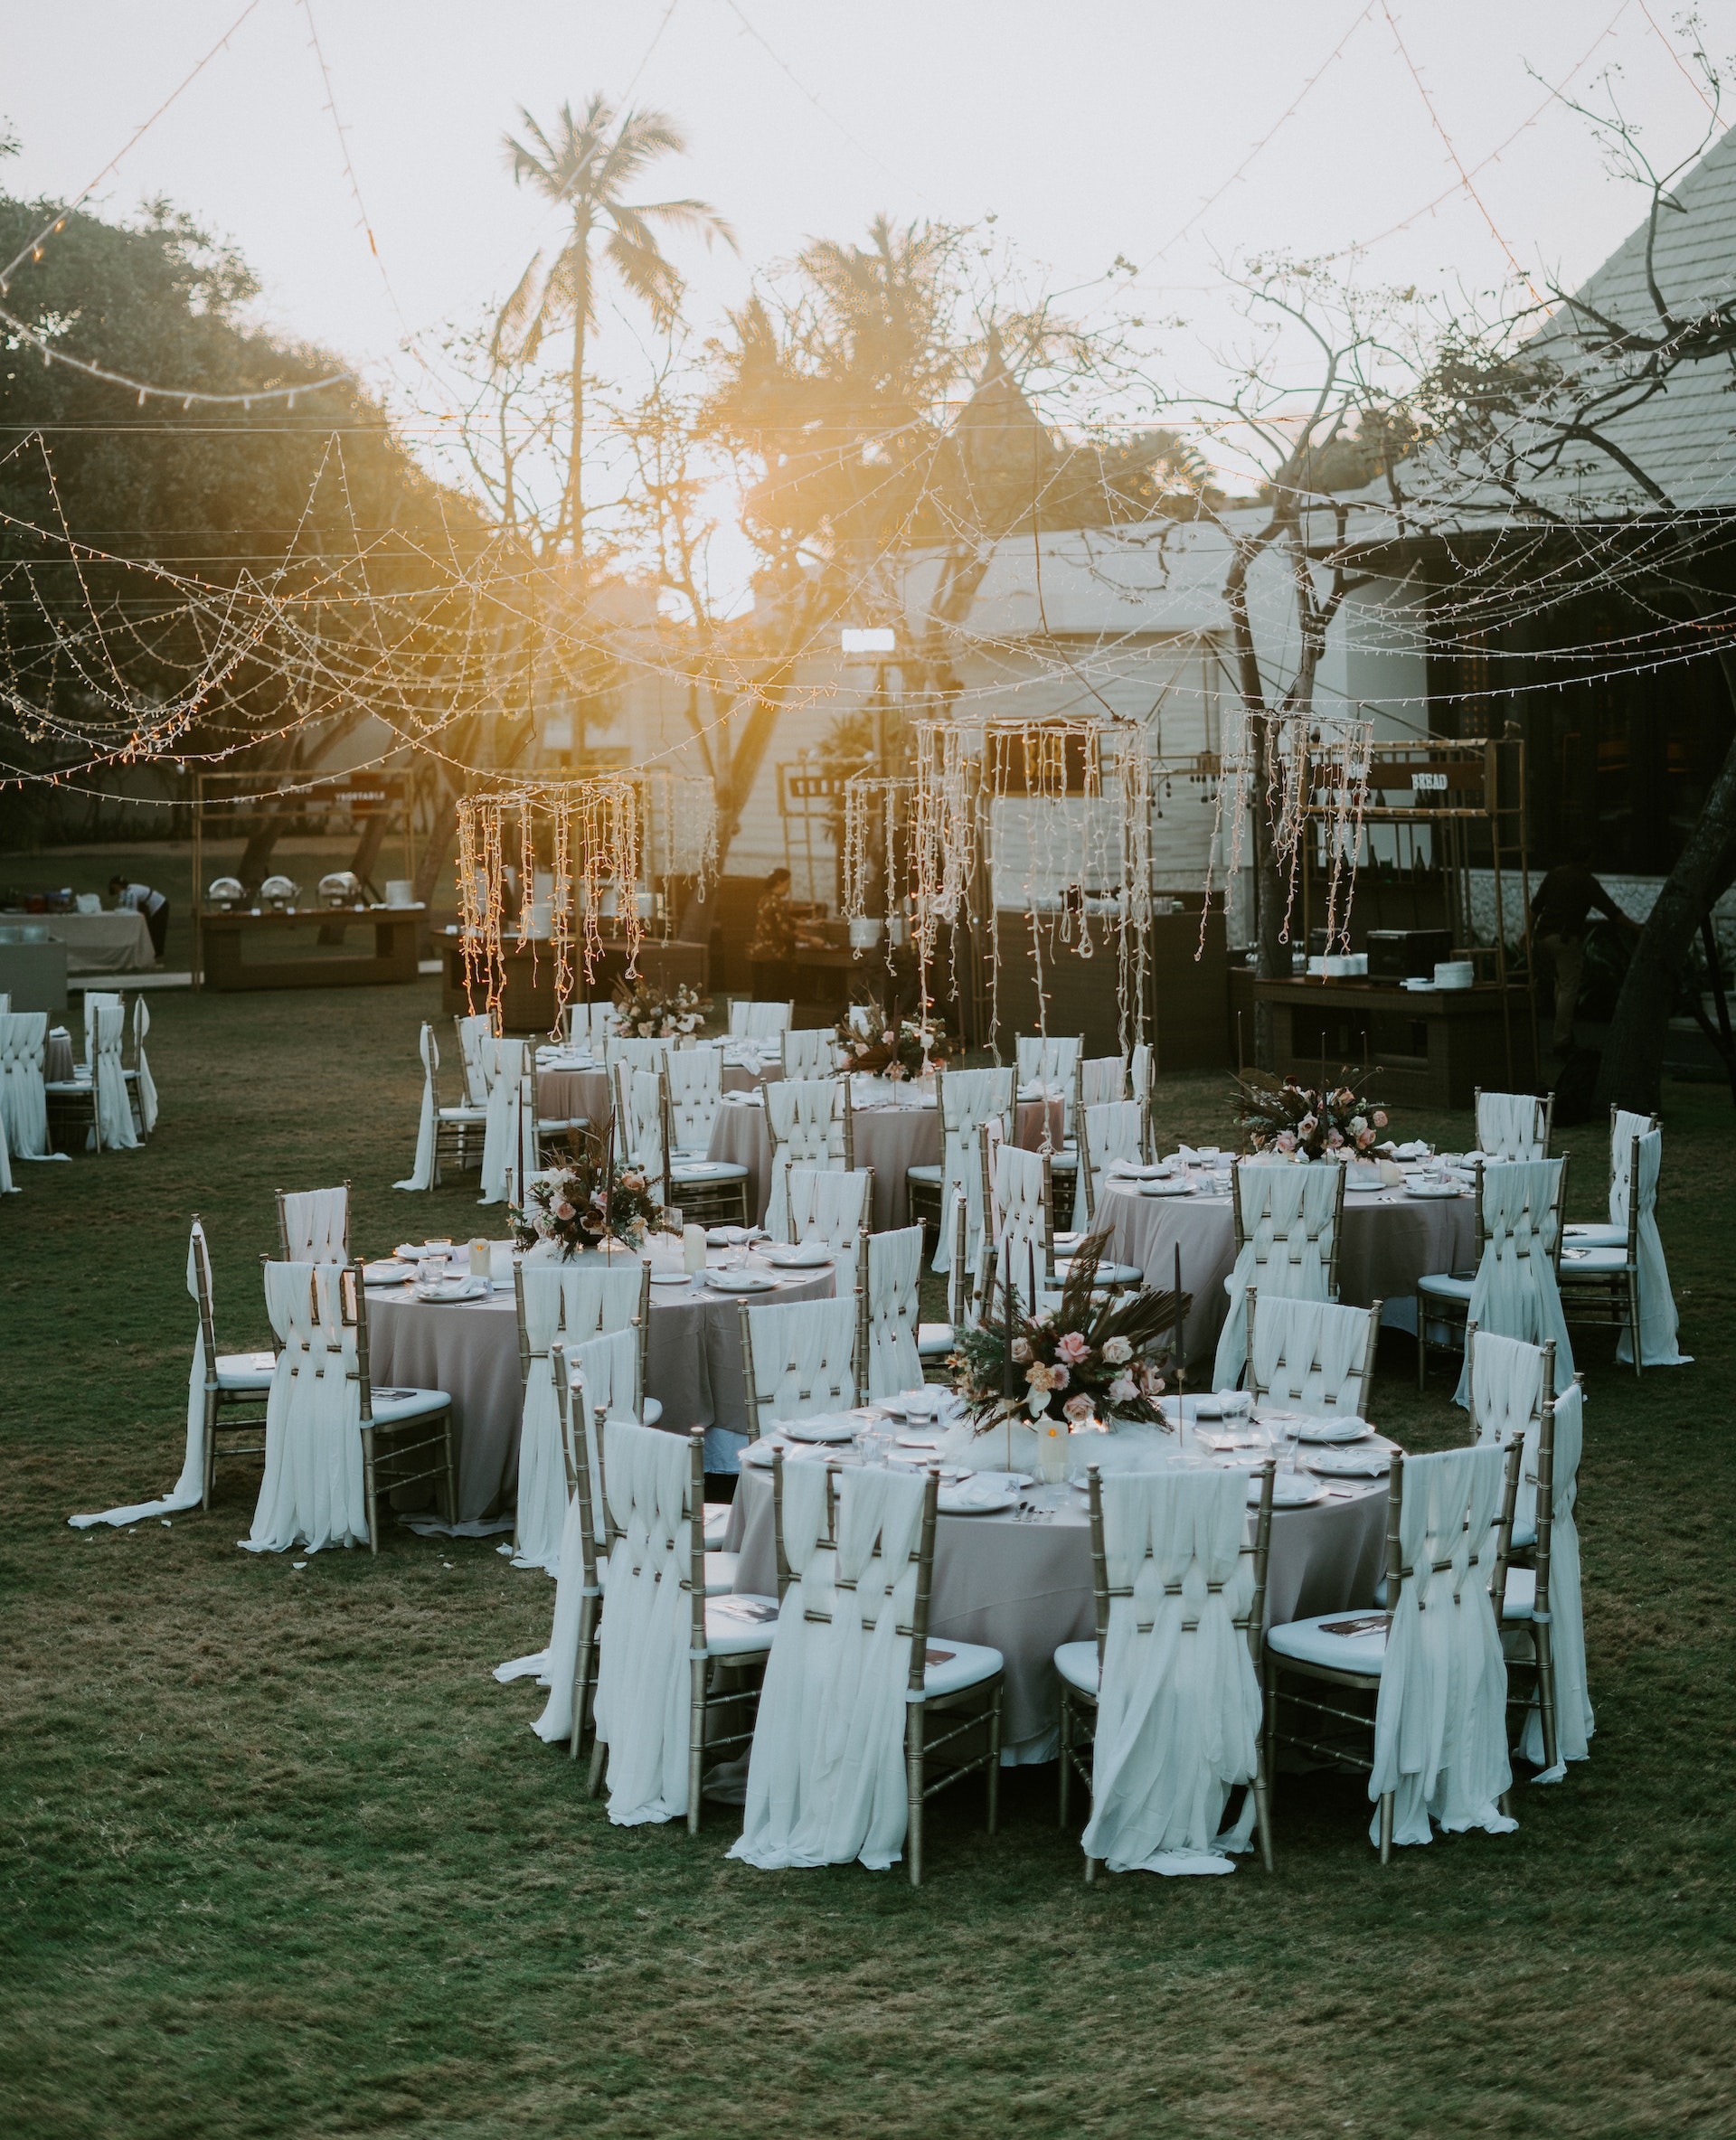 Una boda al aire libre. | Foto: Pexels